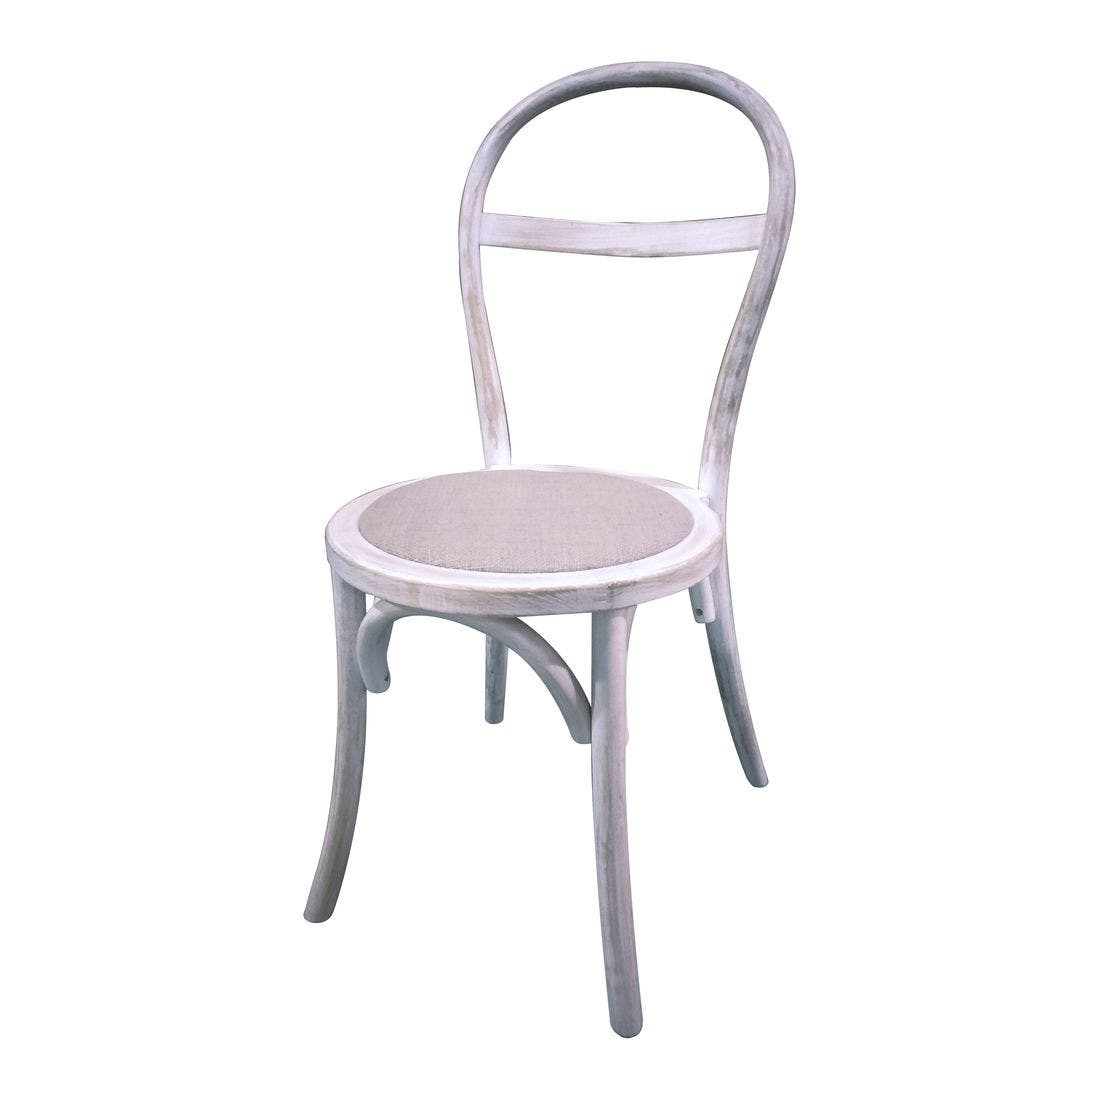 เก้าอี้ทานอาหาร เก้าอี้ไม้เบาะผ้า รุ่น Xuxa สีสีขาว-SB Design Square